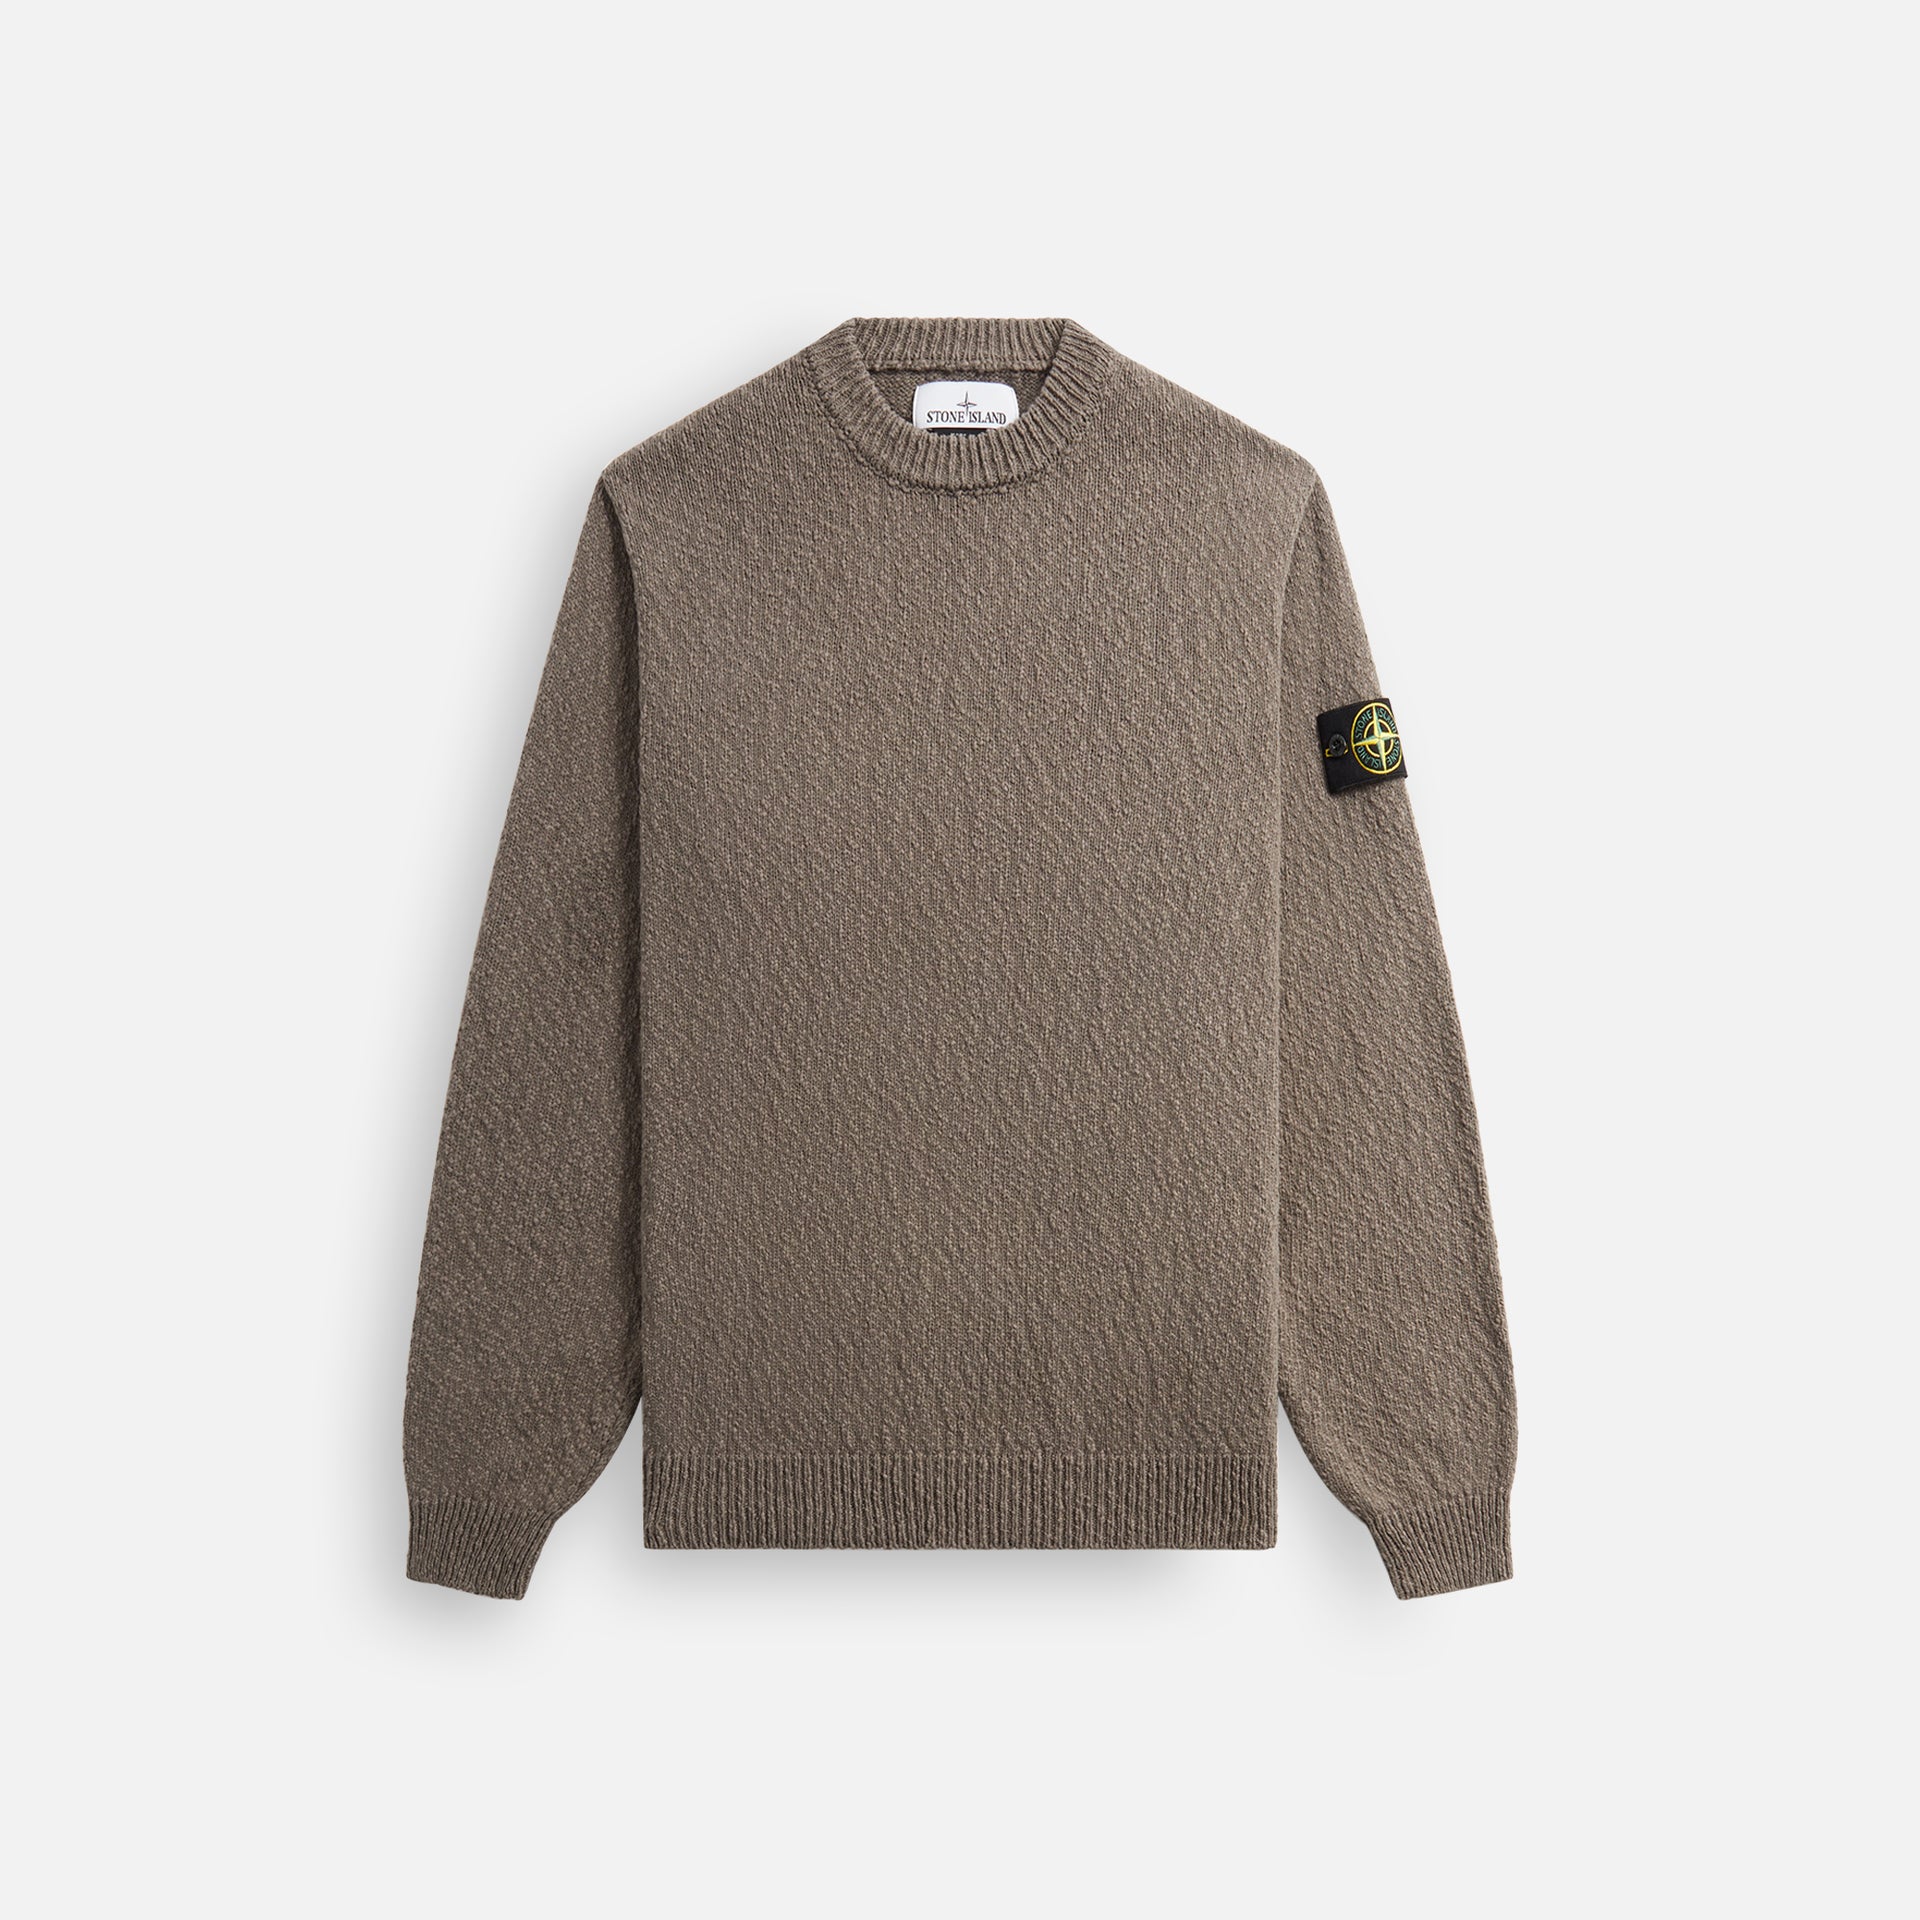 Stone Island warm Sweater - Dove Grey